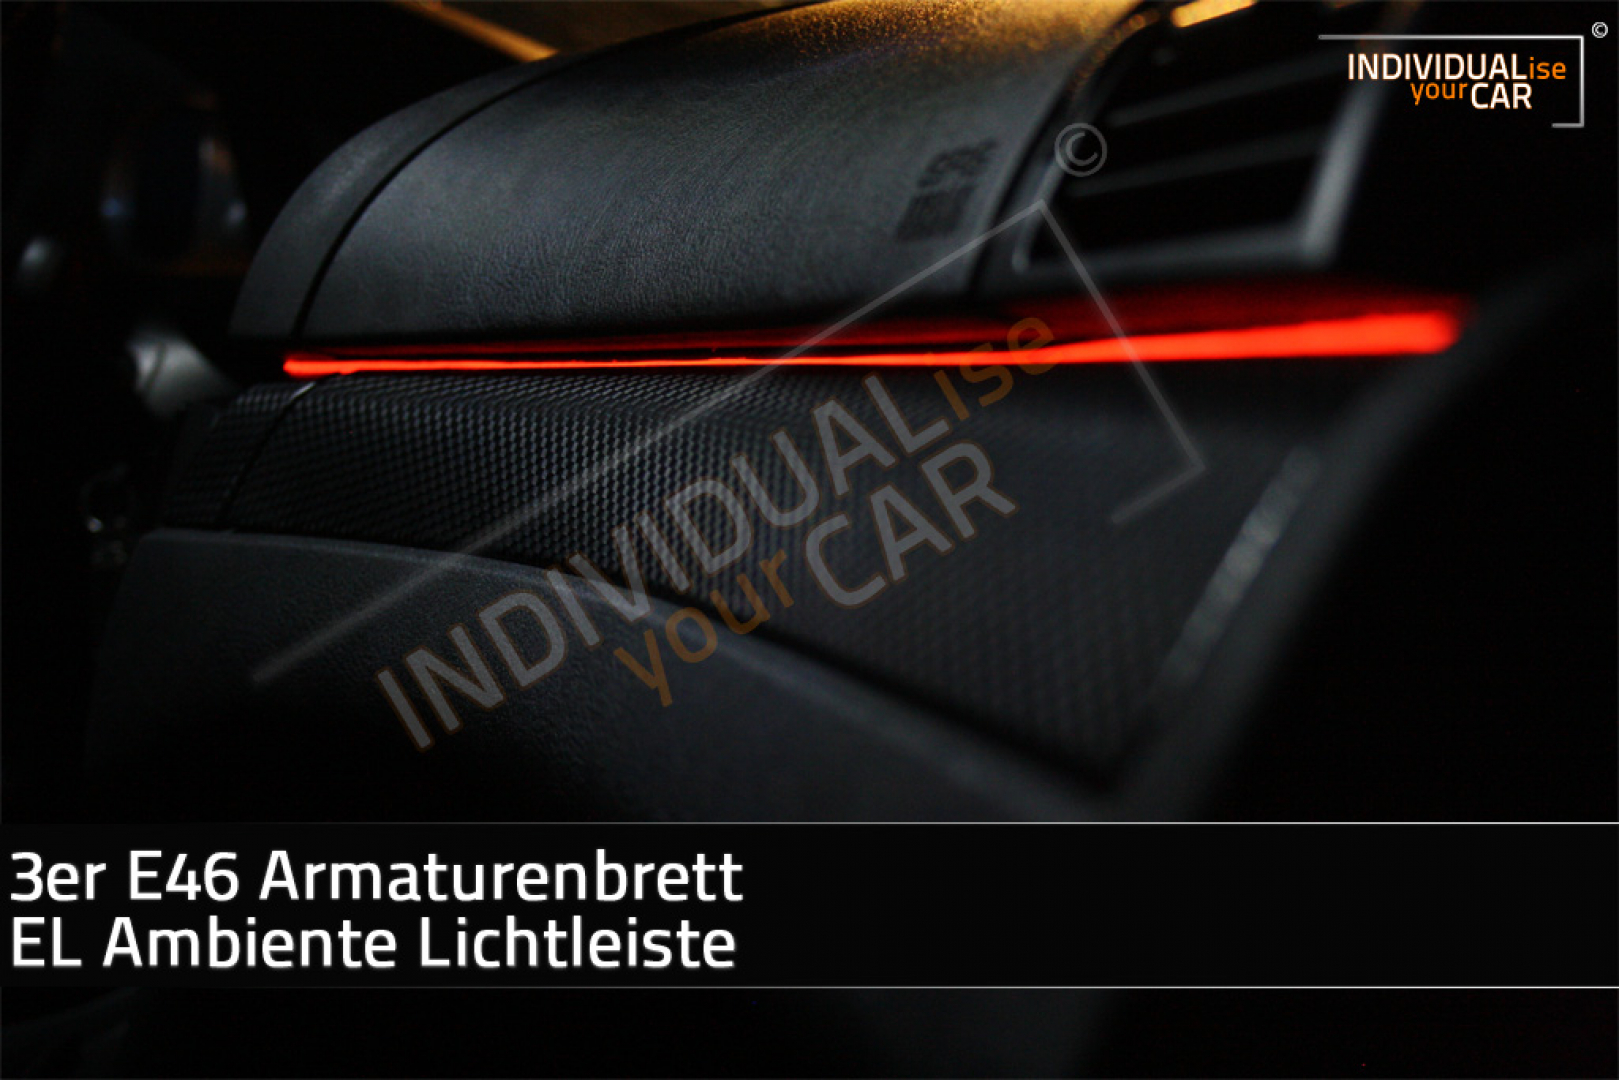 EL Ambiente Lichtleiste Ambientebeleuchtung passend für BMW 3er E46 Armaturenbrett